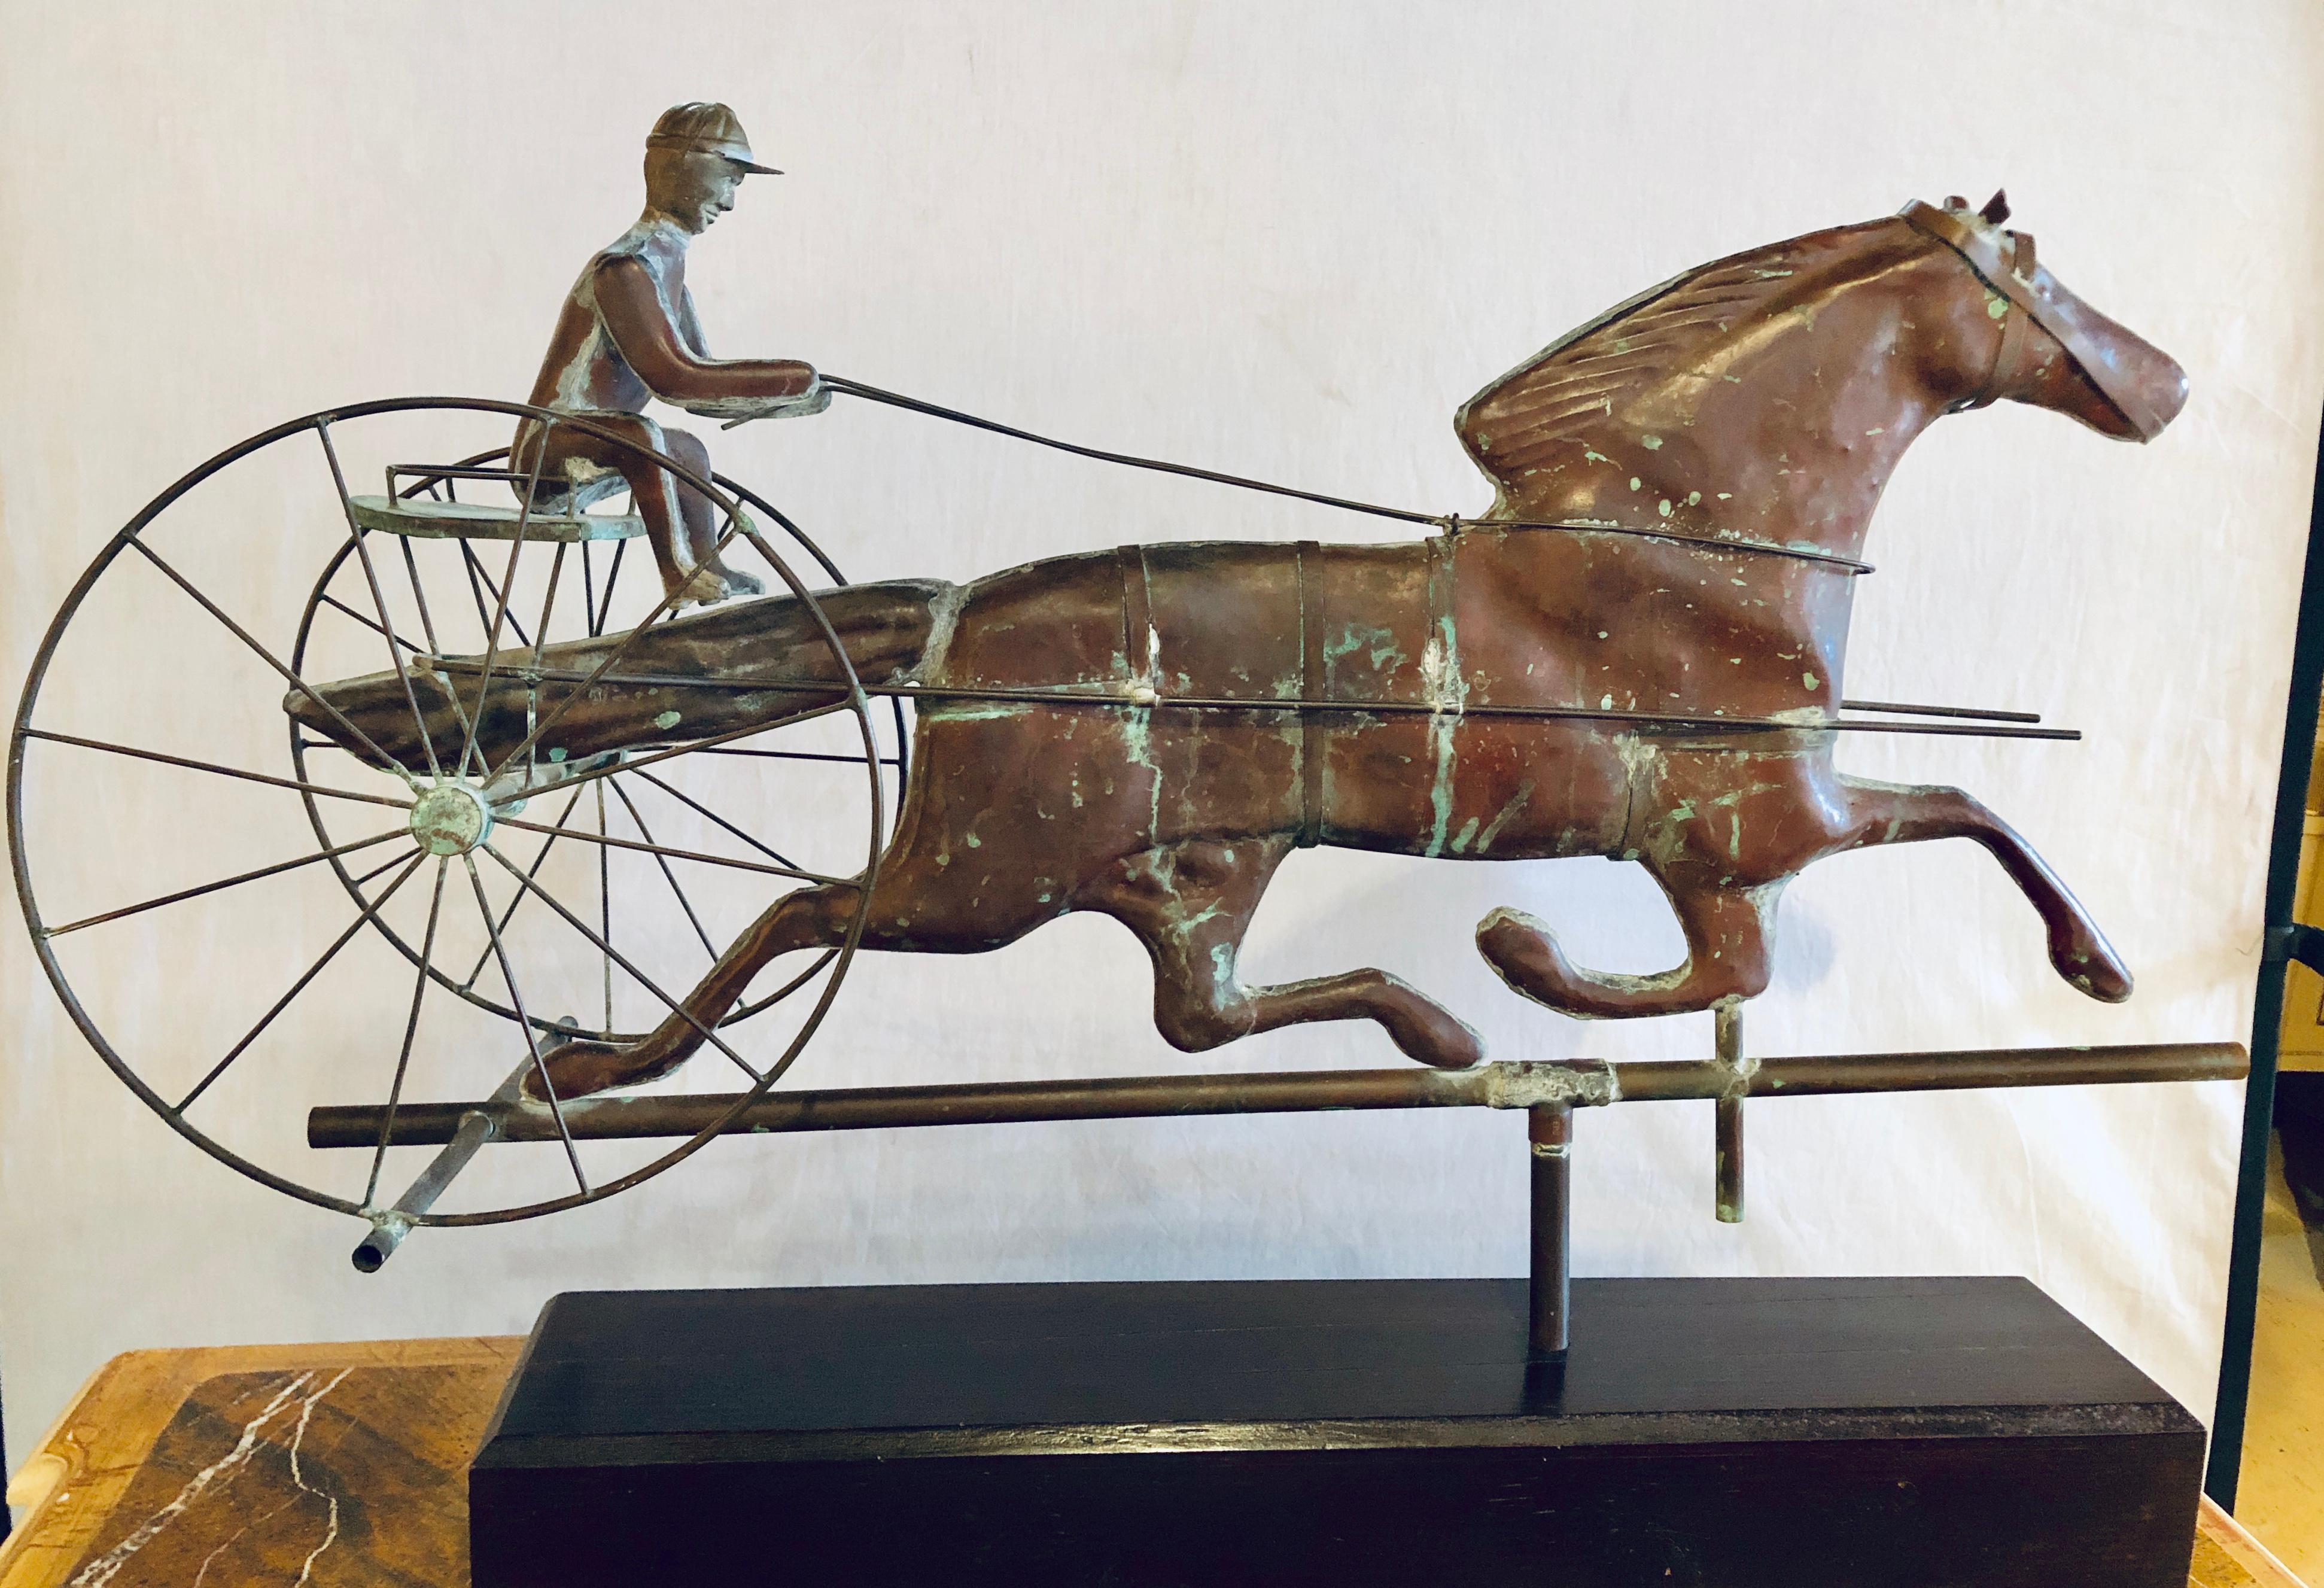 St. Julien avec girouette en cuivre moulé Sulky, attribuée à J.W. Fiske, New York, dernier quart du 19e siècle, girouette de cheval et de meneur en tôle de cuivre moulée, avec tête de cheval et mains de meneur en fonte, rênes et siège en tôle de